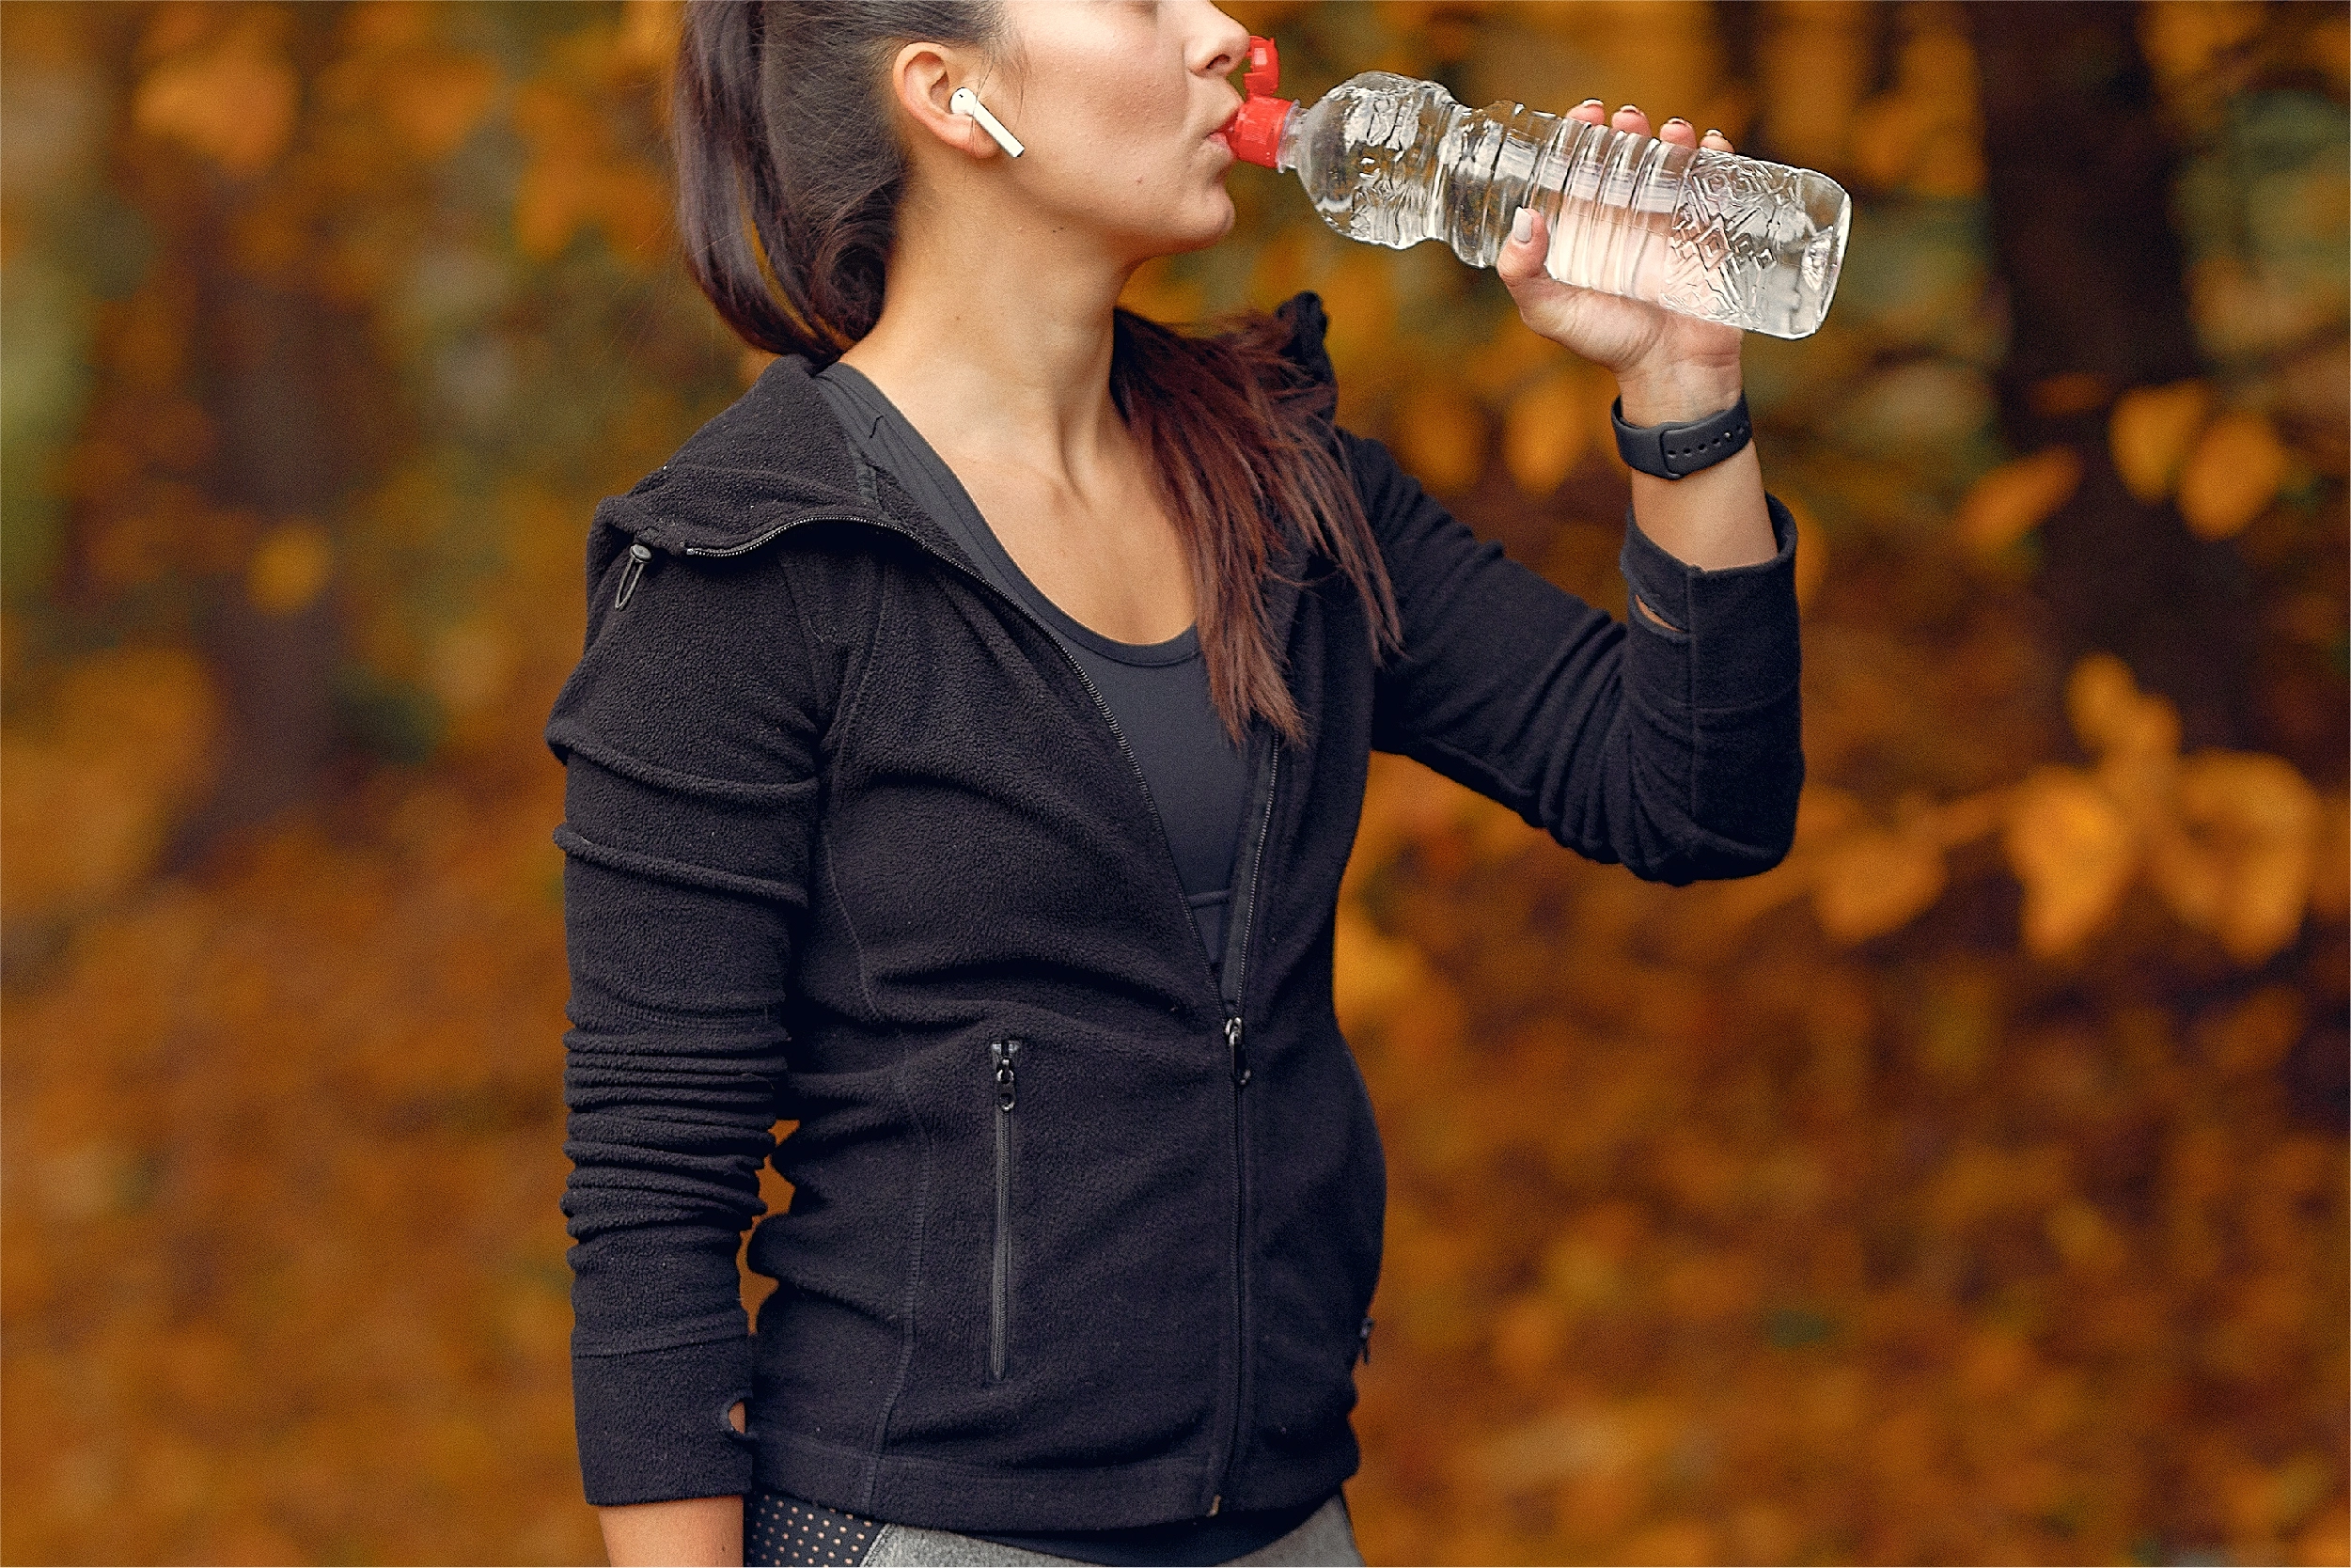 La importancia de mantenerse hidratado/a en otoño